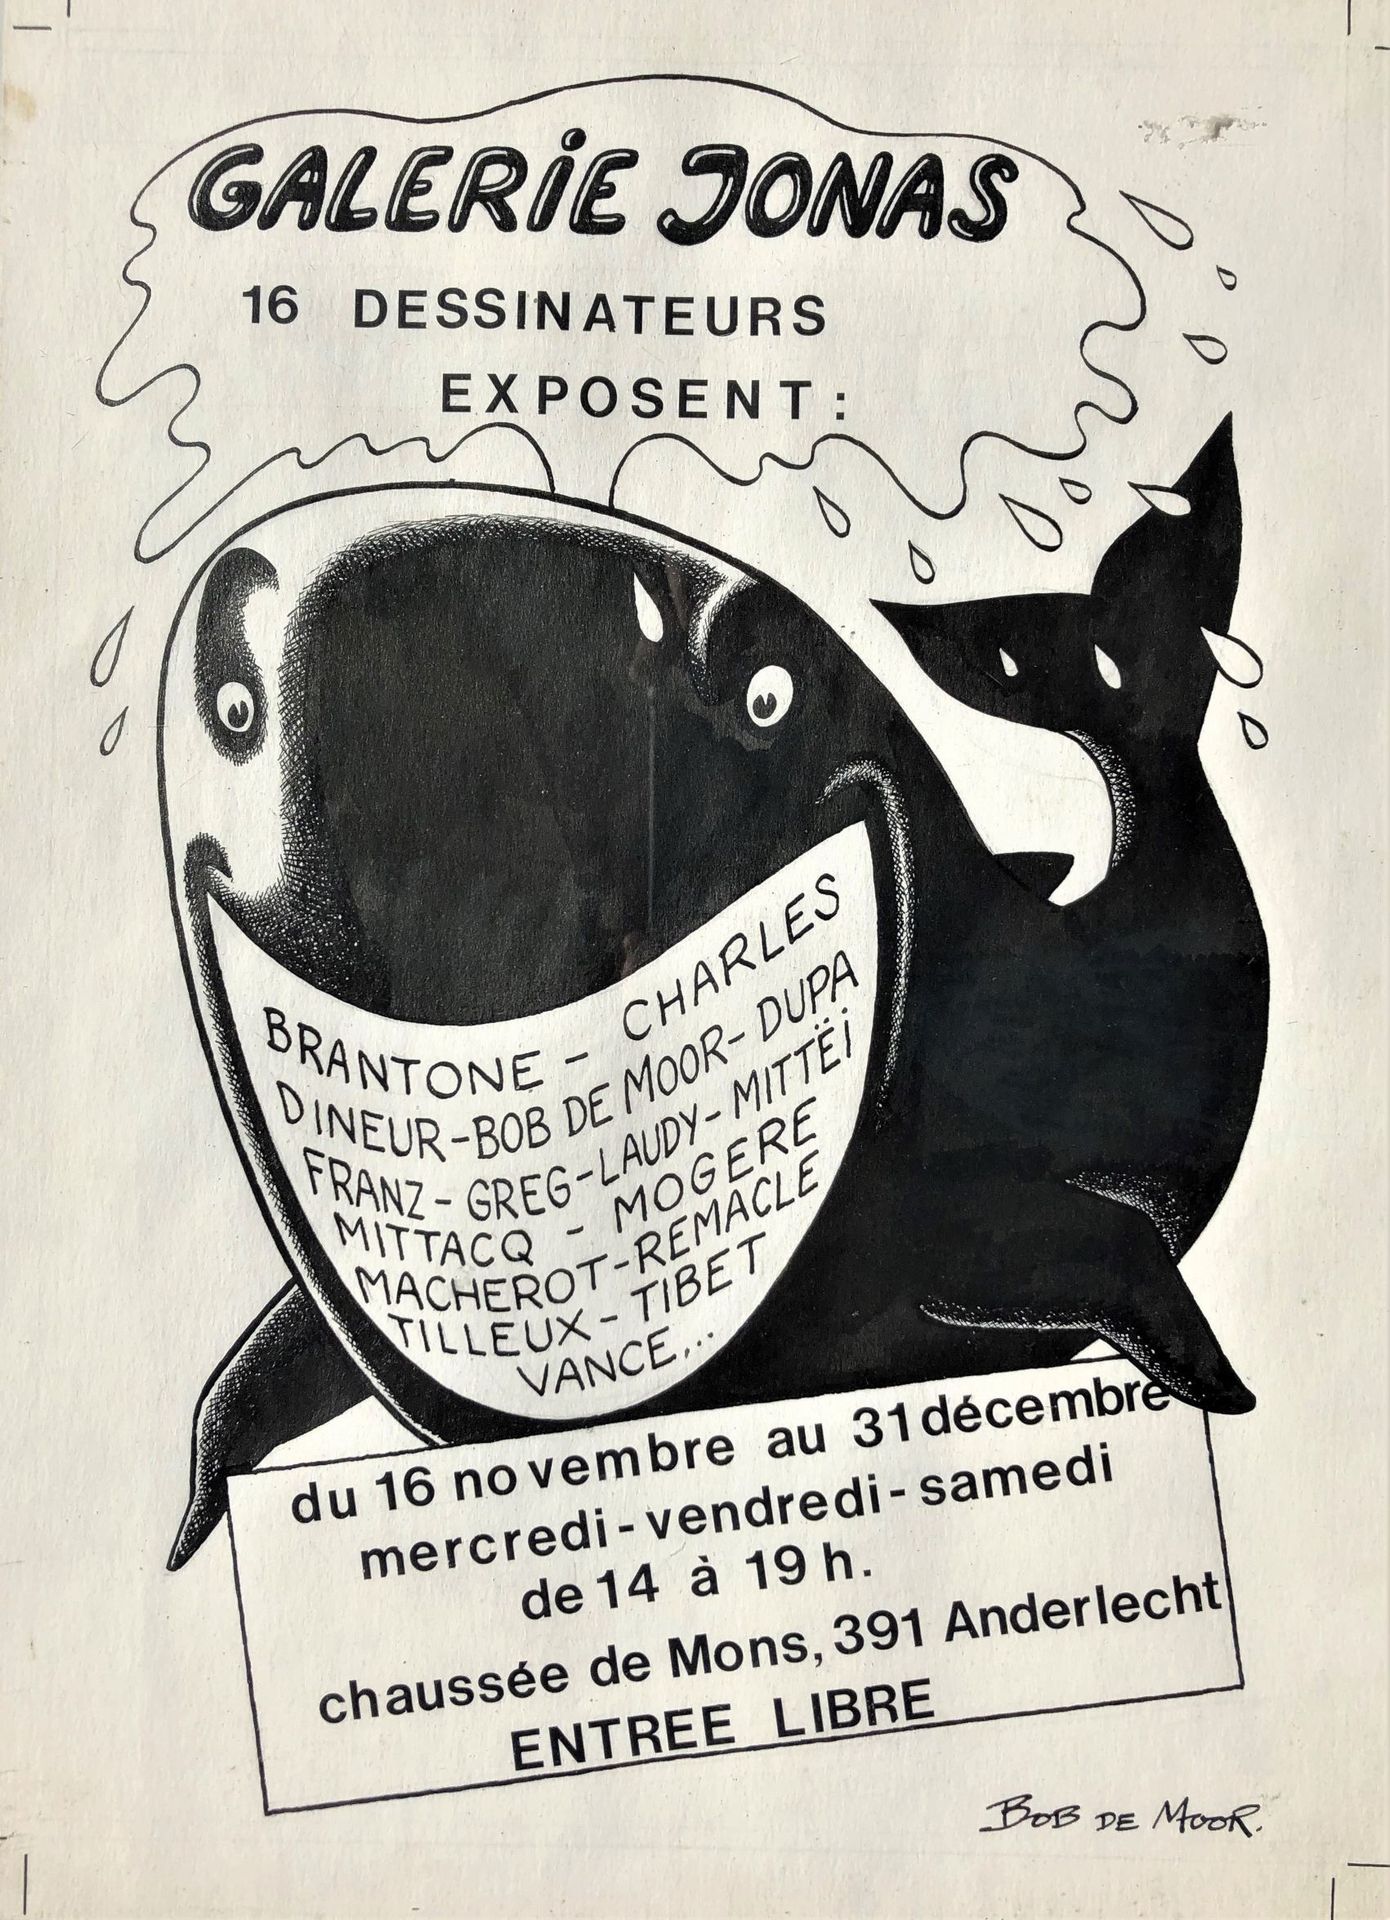 Null 鲍勃-德-摩尔 原创图画说明了一条微笑的鲸鱼，嘴里含着16位漫画家的名字。 1980年左右为布鲁塞尔的乔纳斯书店的海报所做的工作。 印度墨水在纸上。 &hellip;